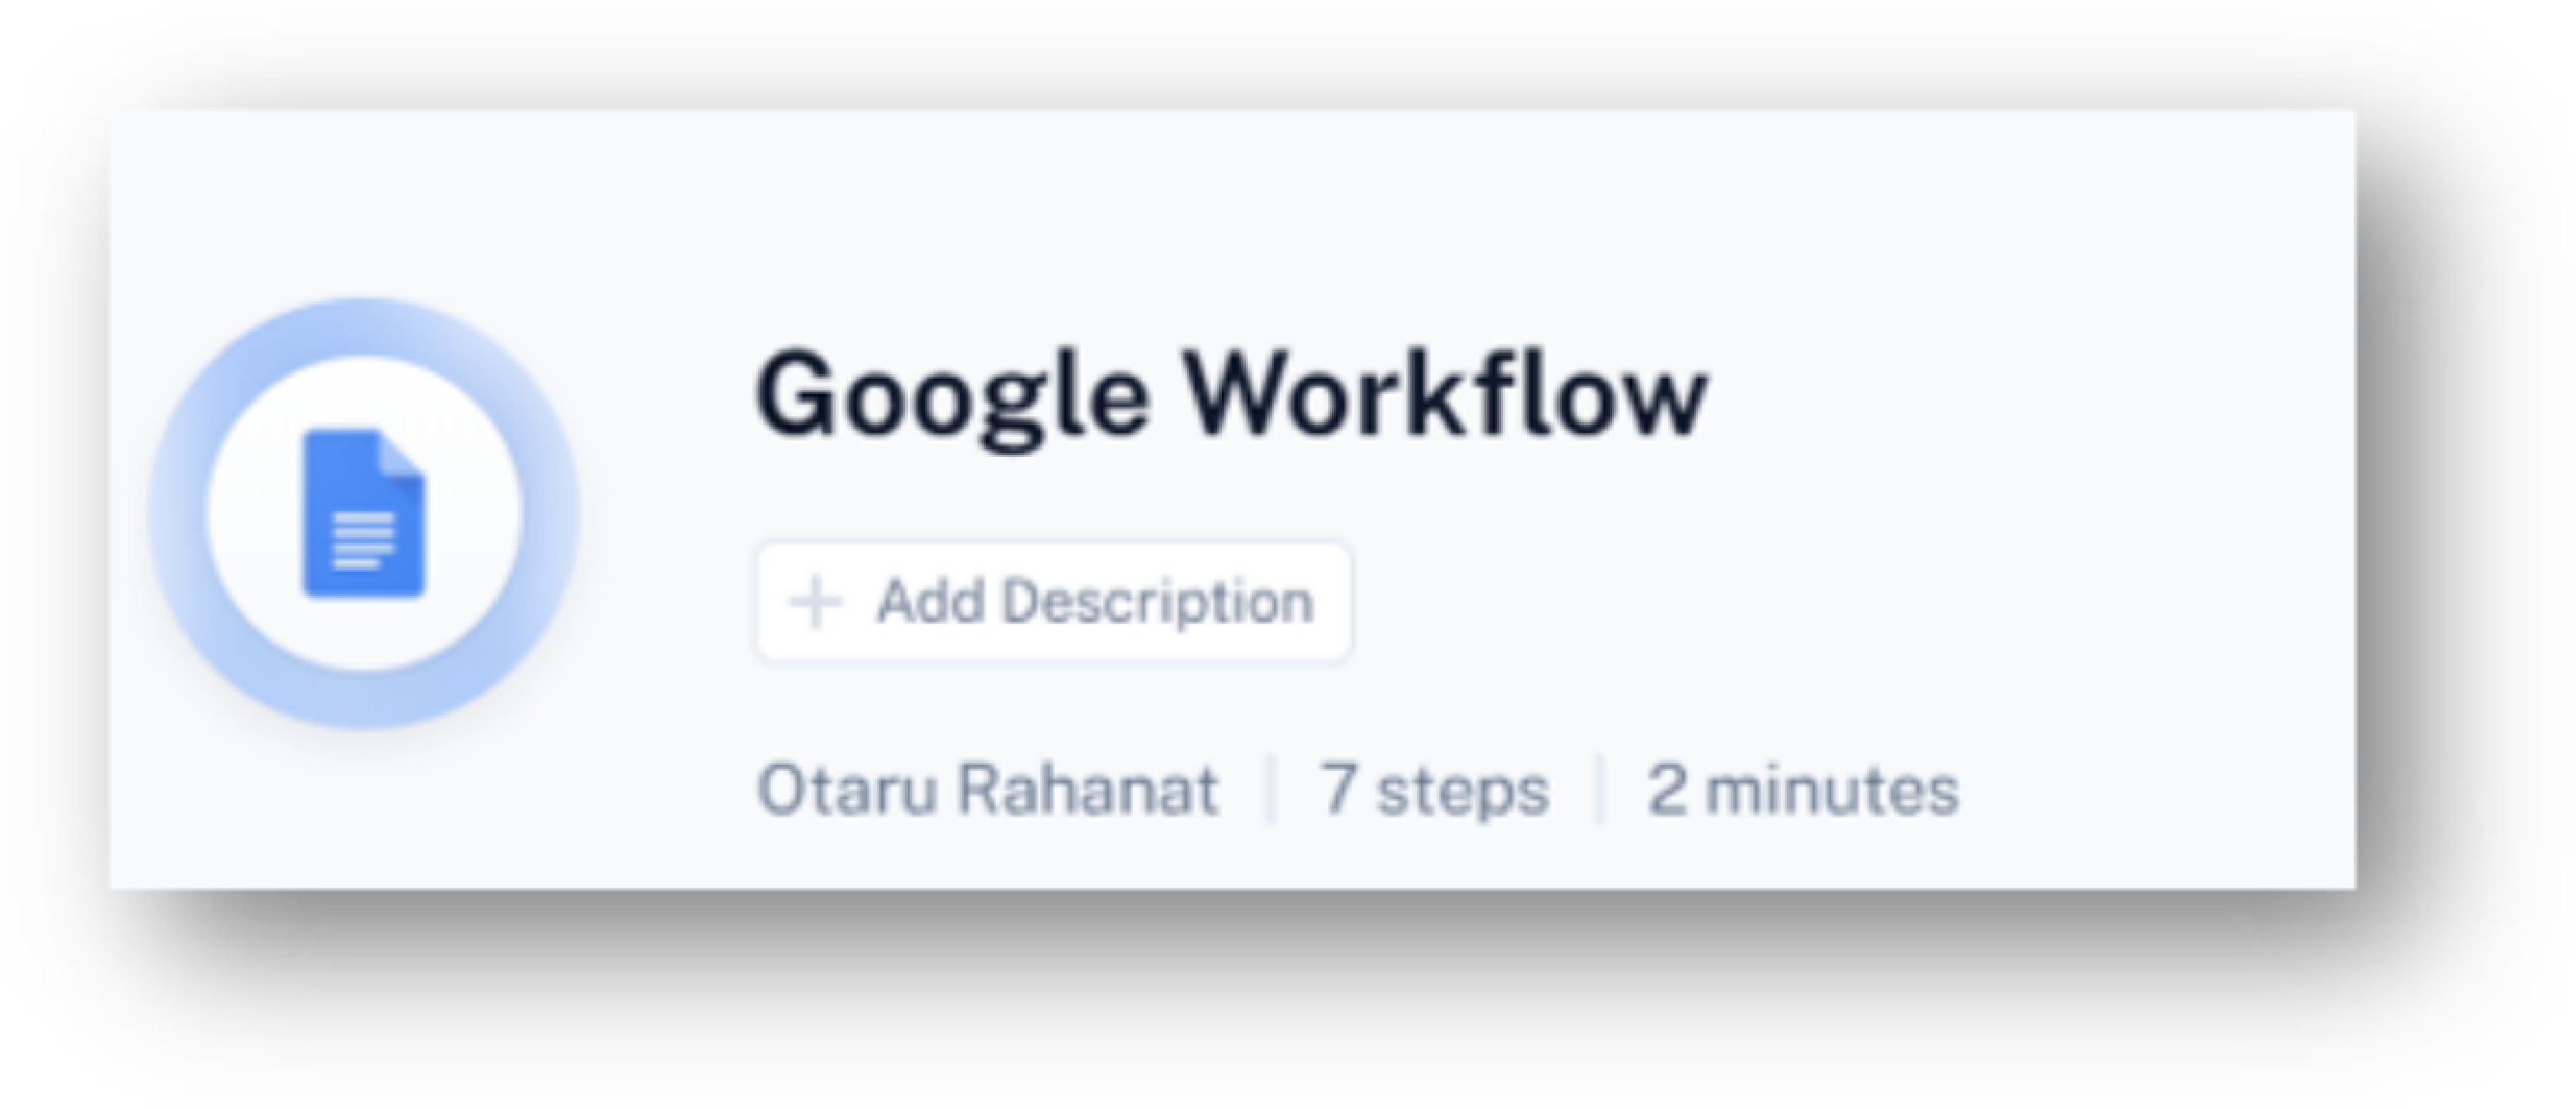 Google Workflow